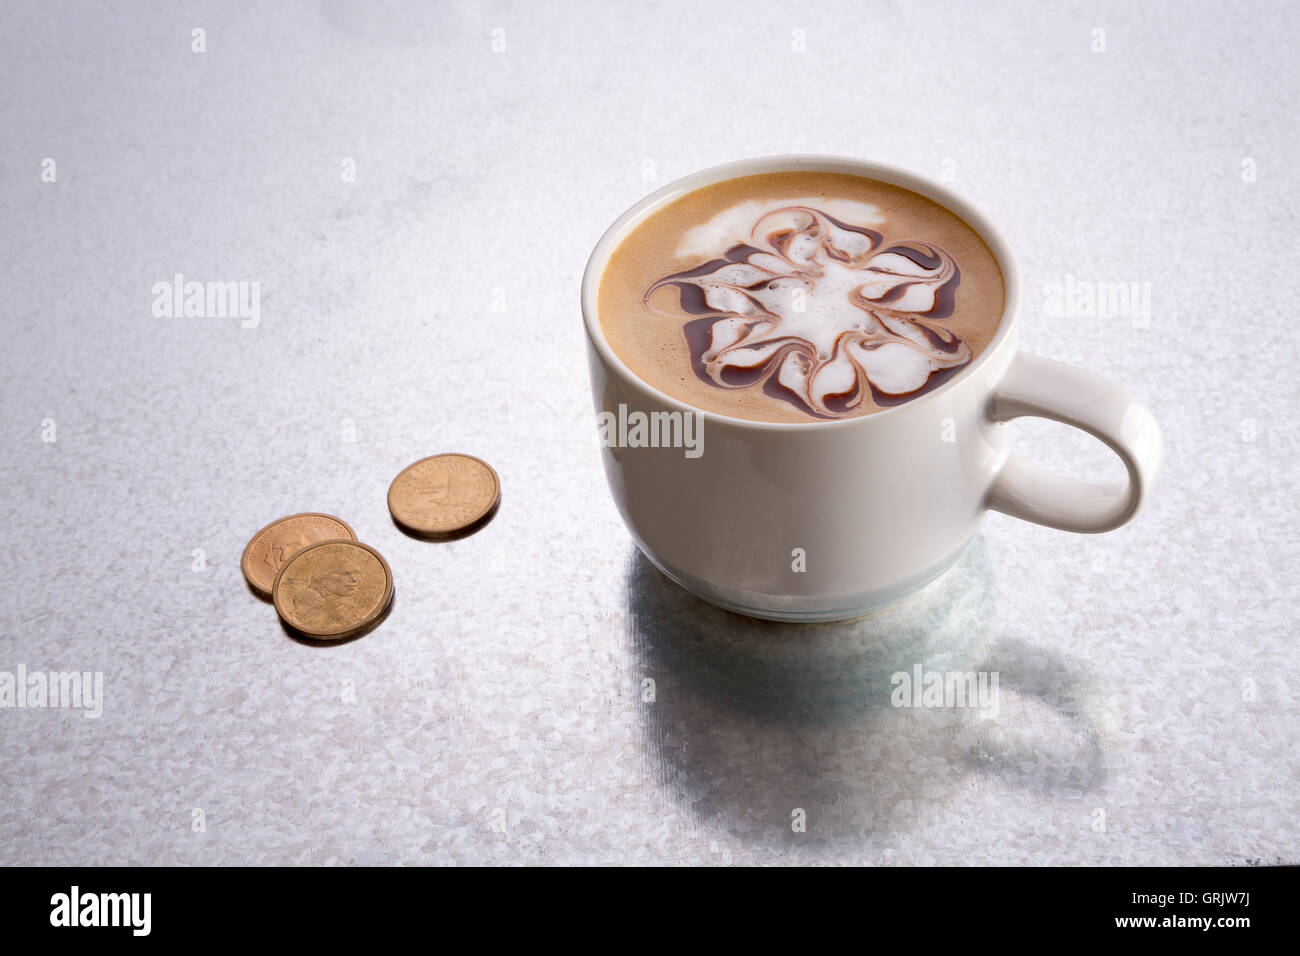 Baristas sont heureux de recevoir un conseil pour leur service, une image conceptuelle avec une tasse de cappuccino avec un motif décoratif patt Banque D'Images